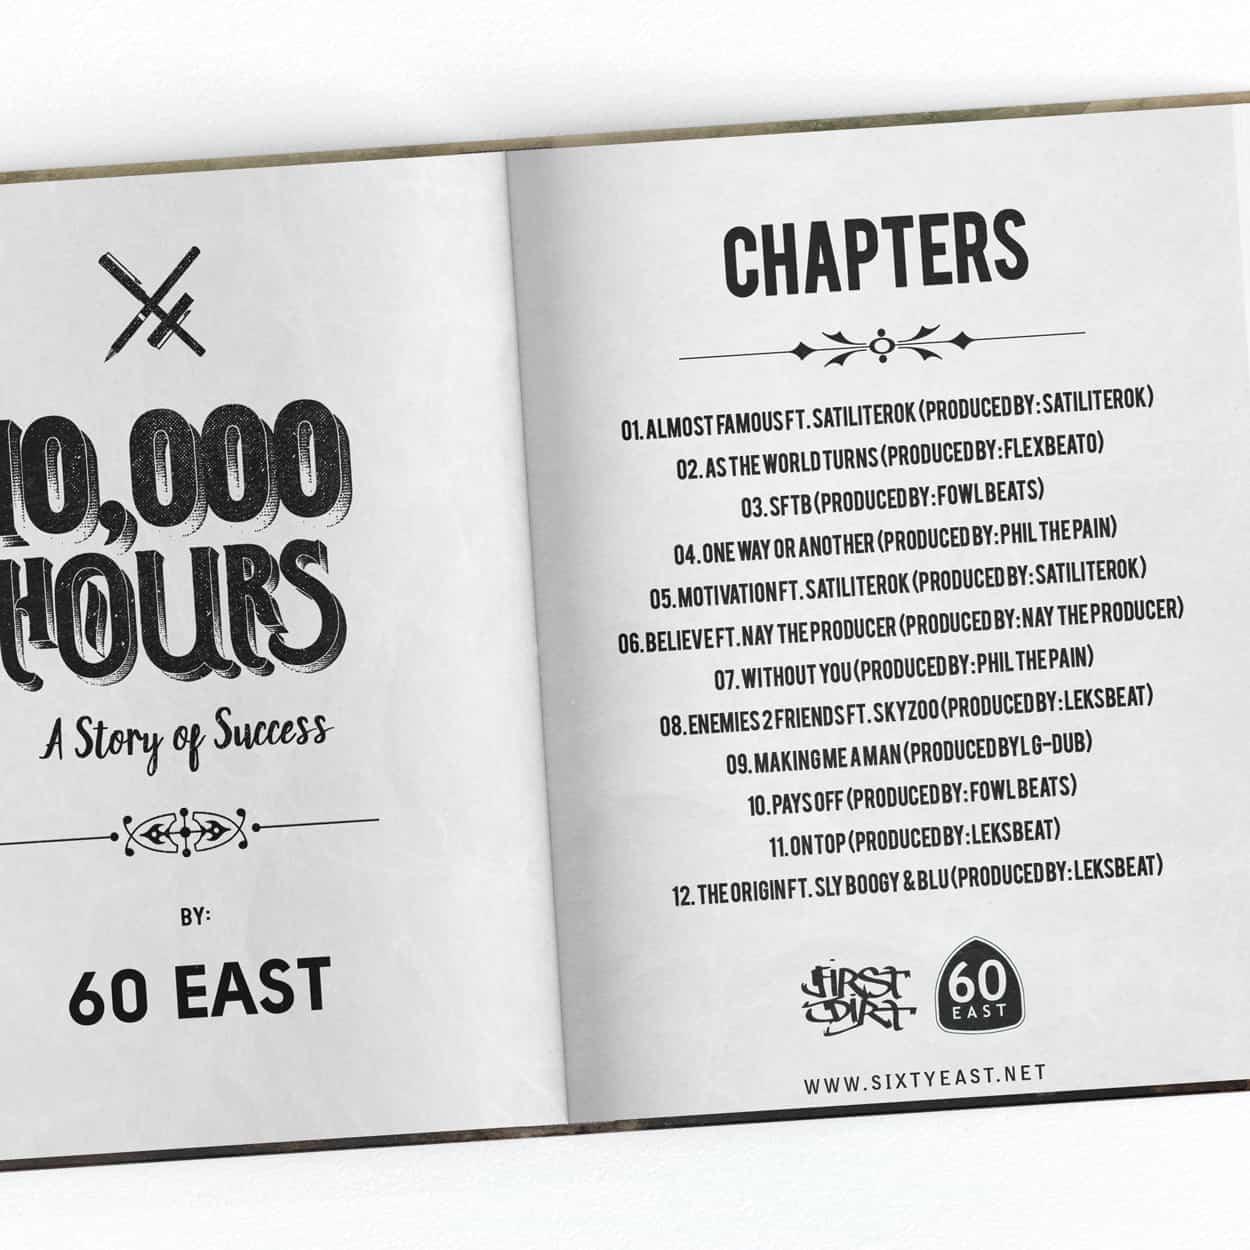 60 east - 10000 hours (a story of success) - album art design